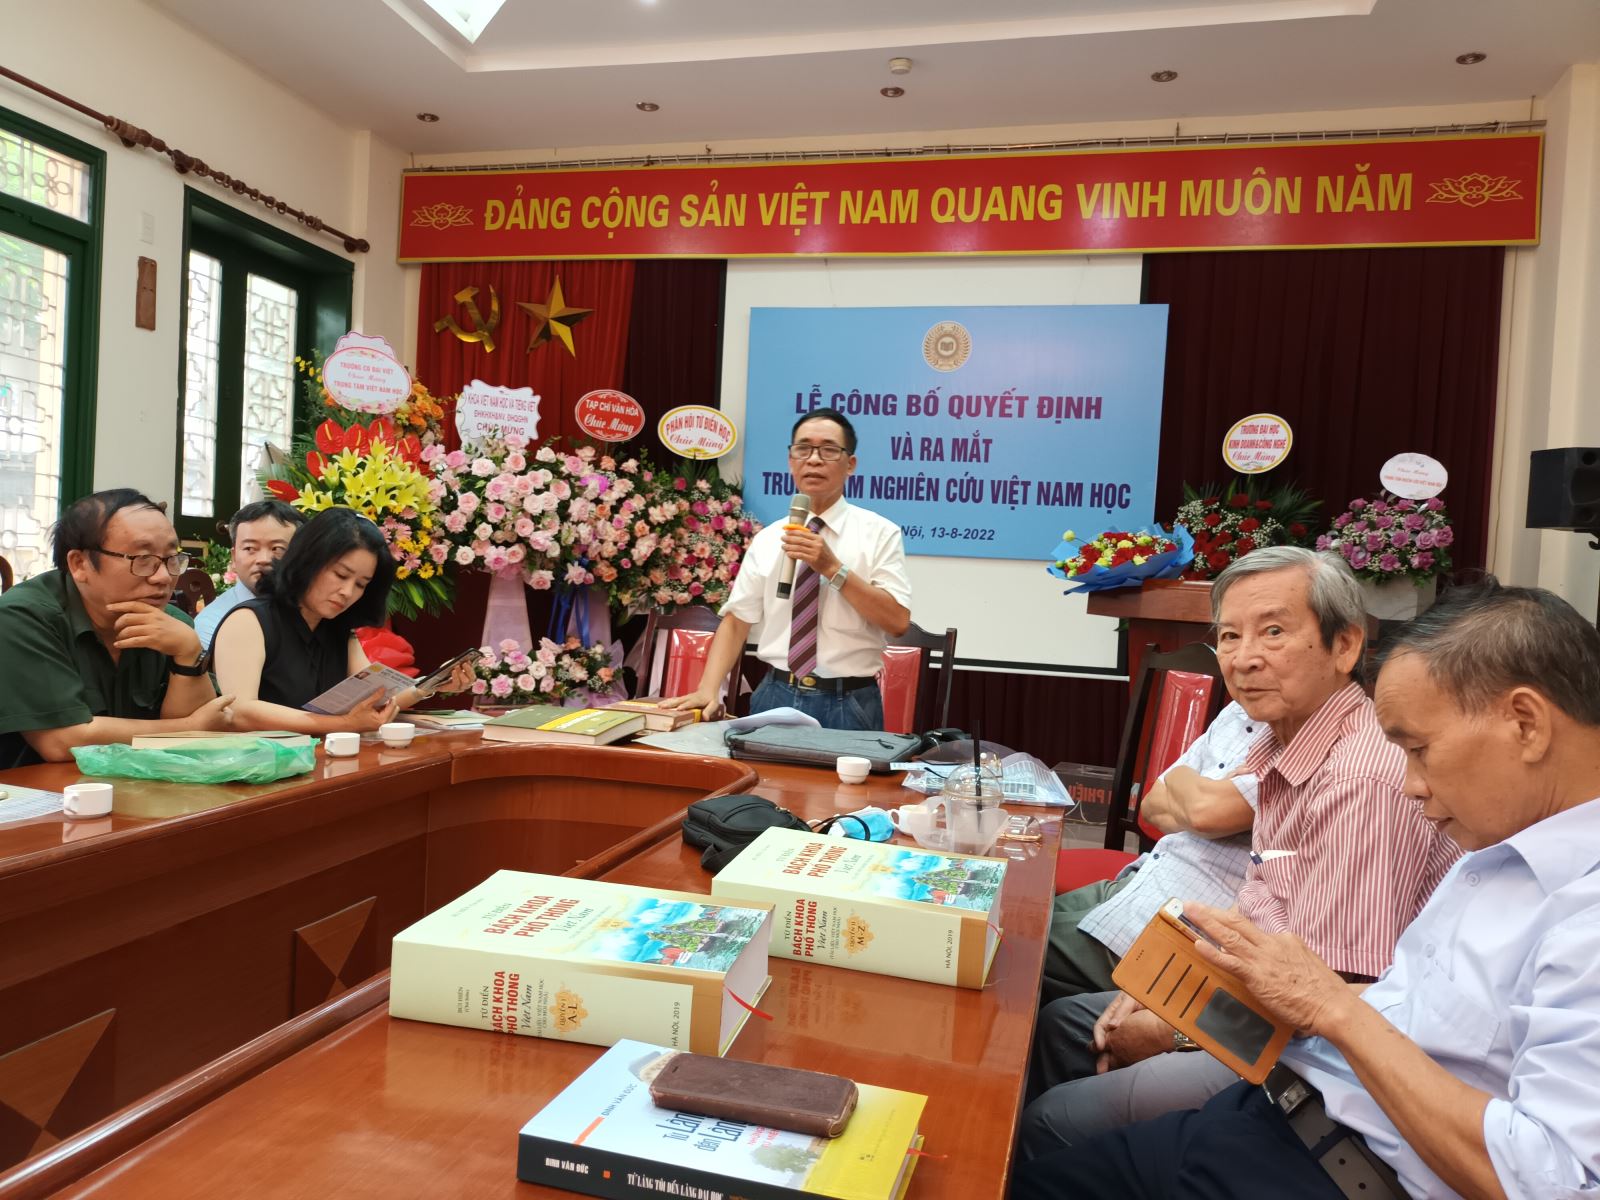 Sáng nay 13-8, tại Hà Nội, Trung tâm Nghiên cứu Việt Nam học (Viện Nghiên cứu Việt Nam học - thuộc Liên hiệp các Hội Khoa học và Kỹ thuật Việt Nam - VUSTA) đã chính thức ra mắt. Tới dự có đông đảo các nhà nghiên cứu khoa học, nhà văn, nhà báo…